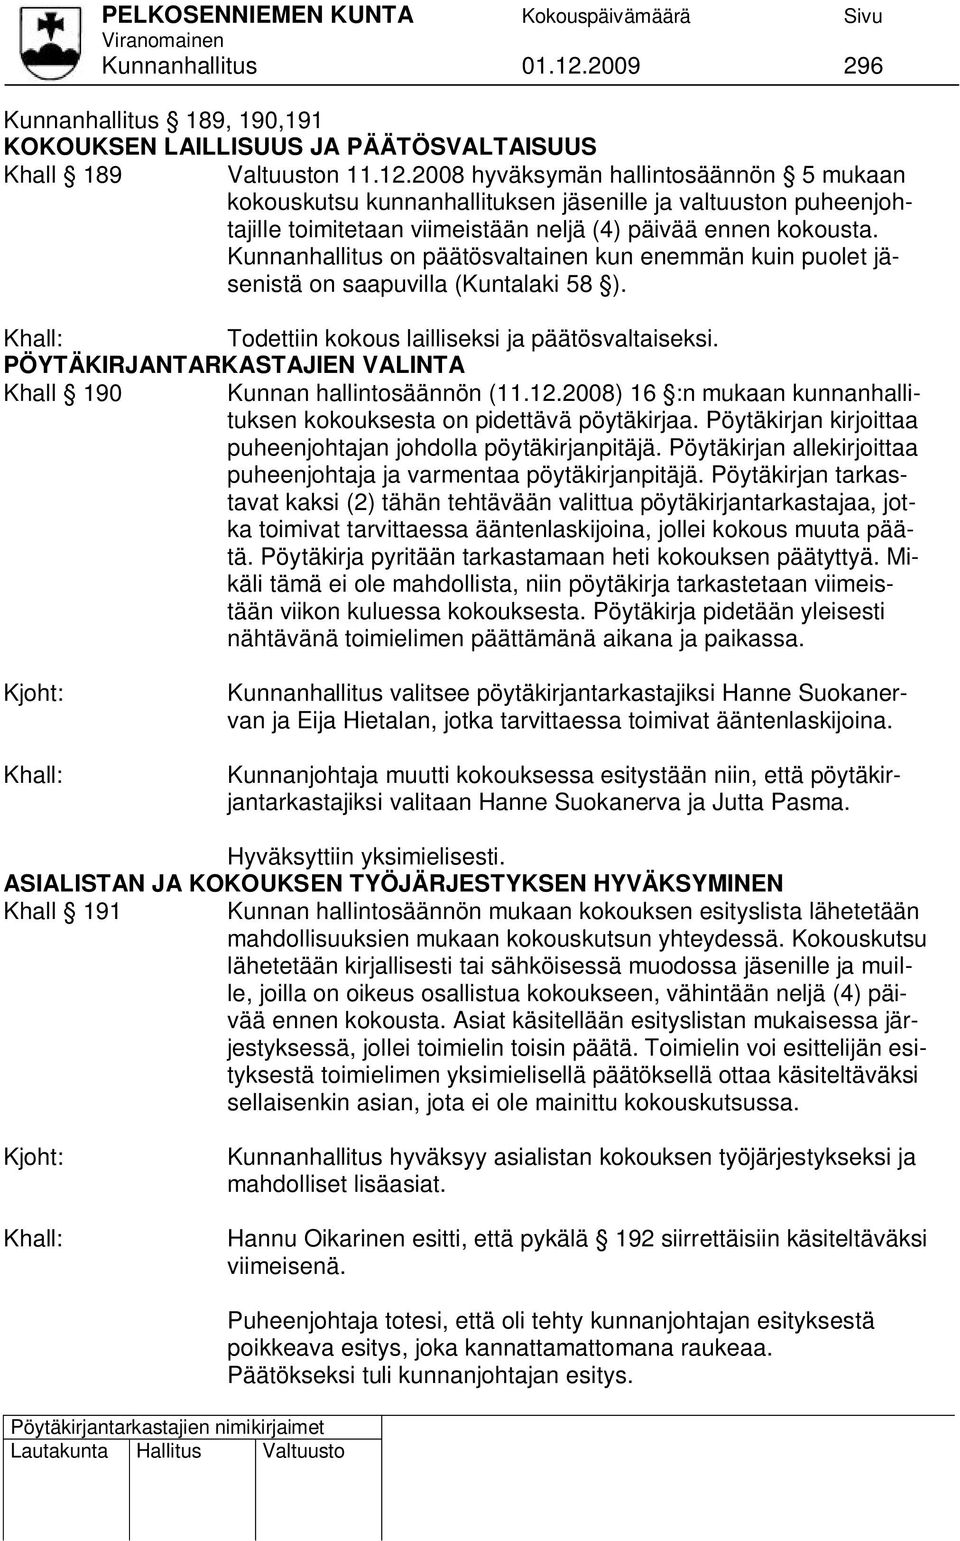 PÖYTÄKIRJANTARKASTAJIEN VALINTA Khall 190 Kunnan hallintosäännön (11.12.2008) 16 :n mukaan kunnanhallituksen kokouksesta on pidettävä pöytäkirjaa.